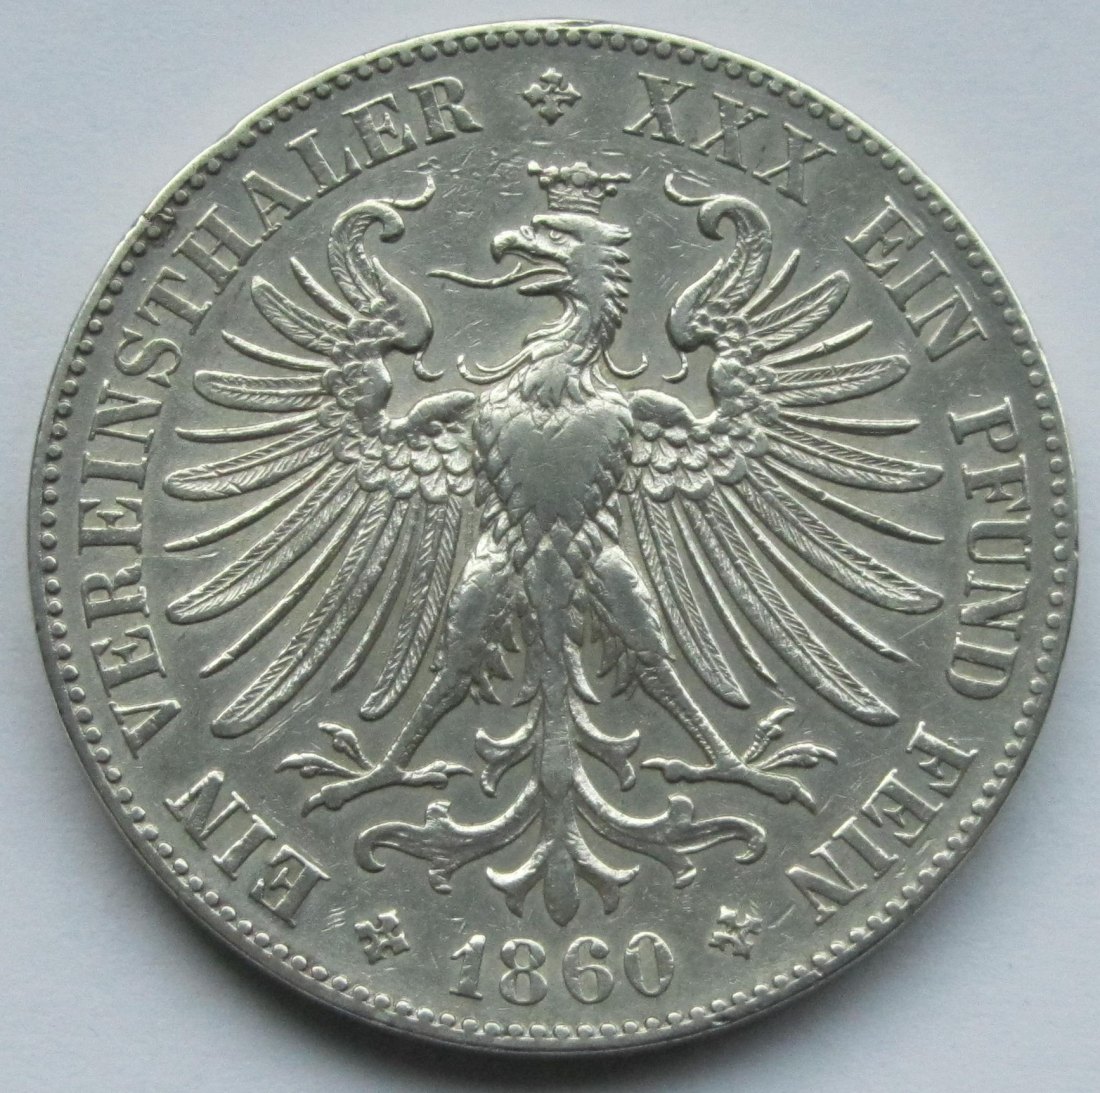  Frankfurt: 1 Taler 1860   